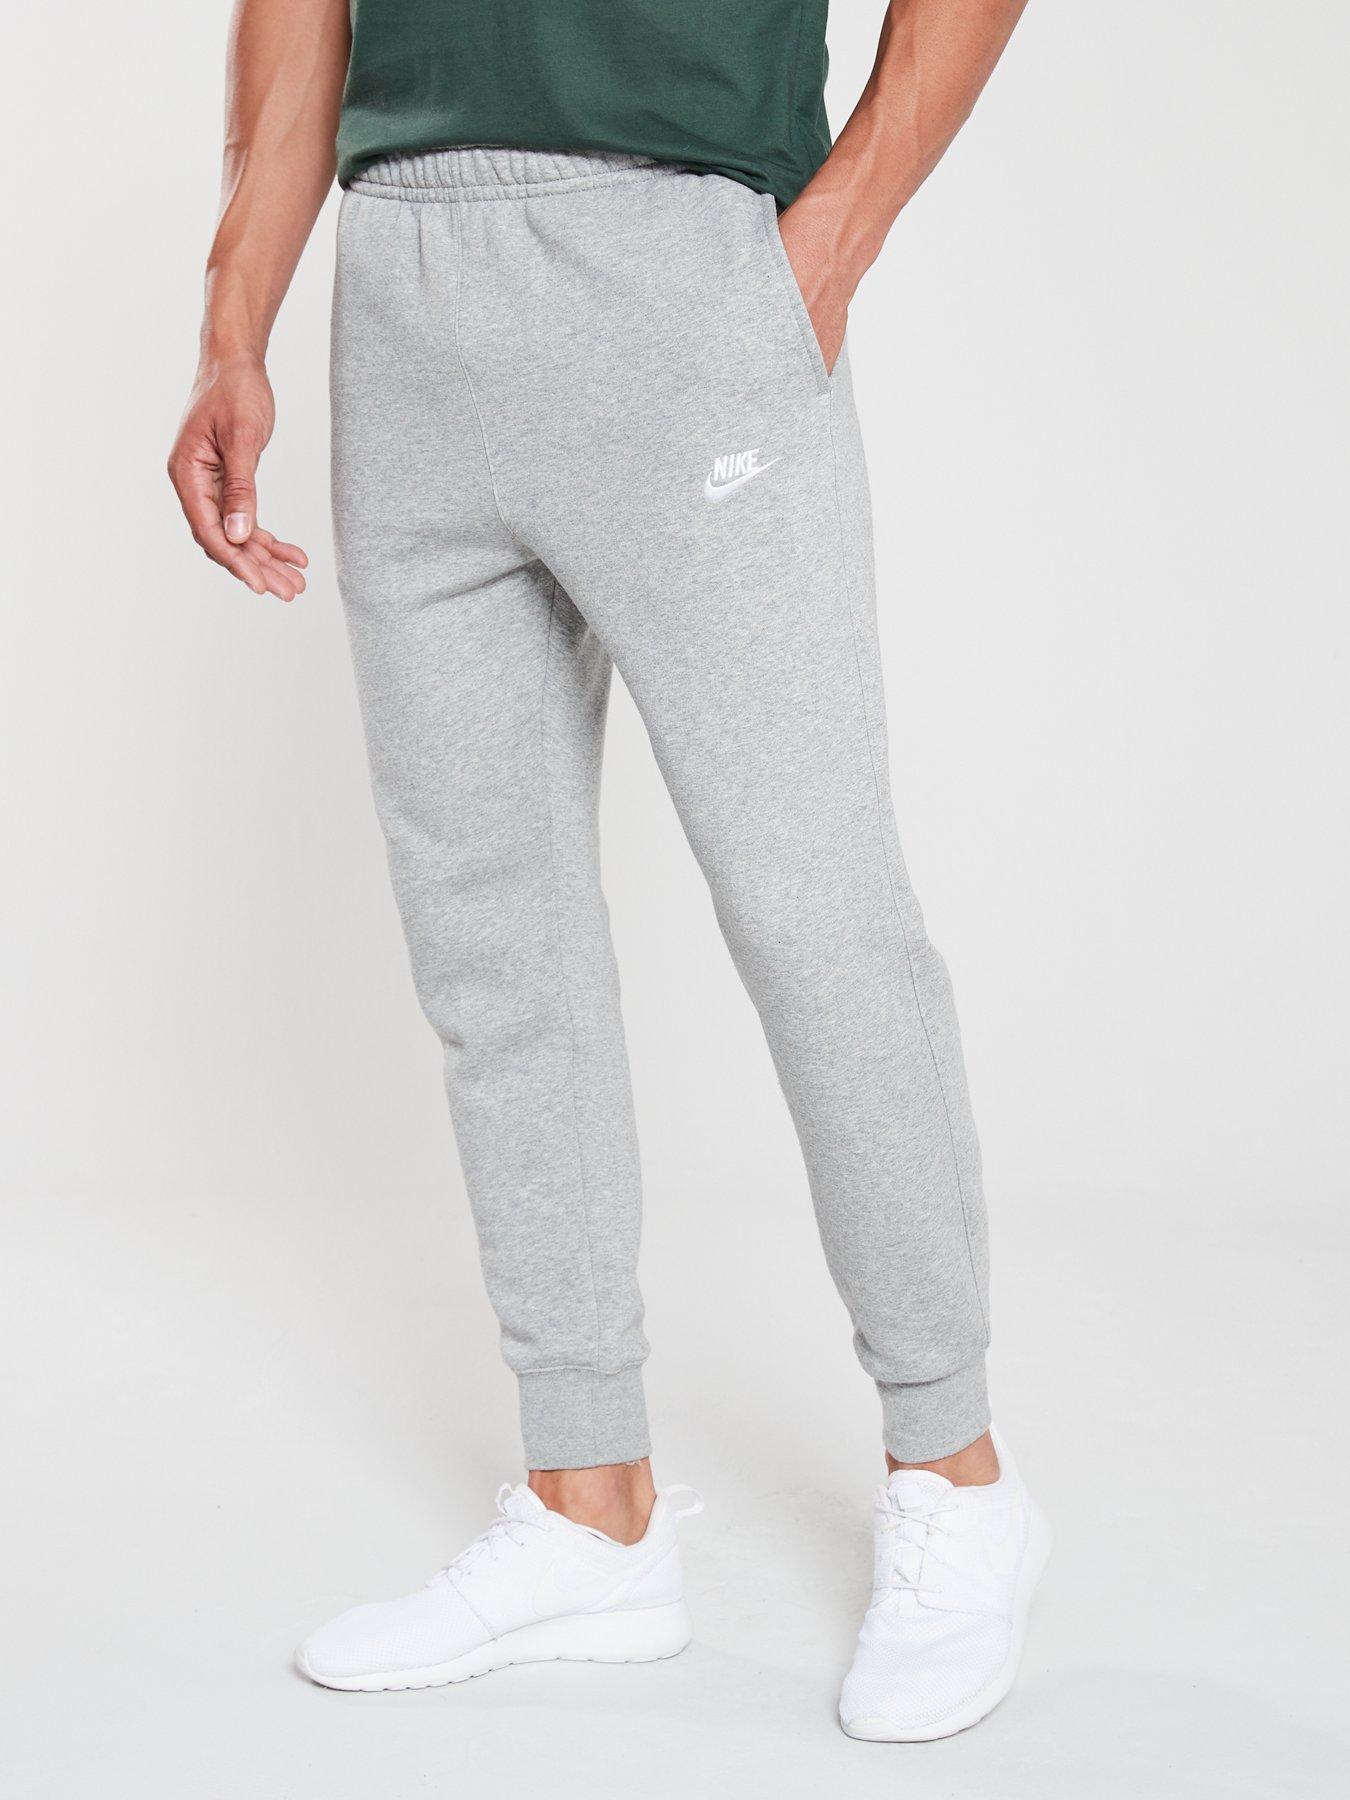 gray nike sweatpants for men